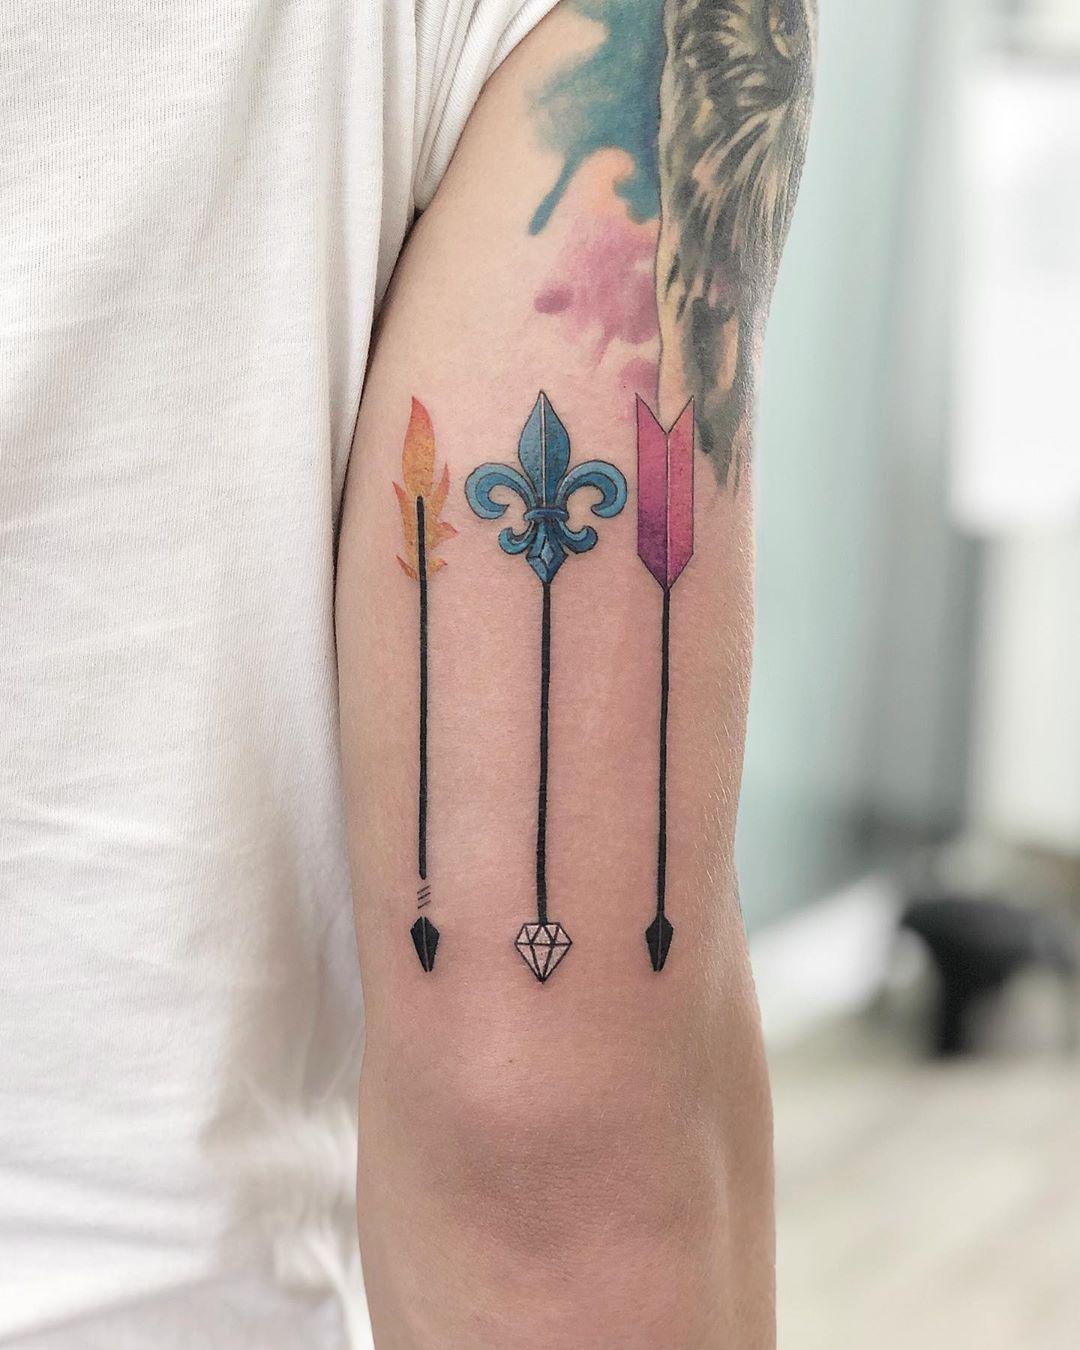 Three arrows by @soychapa